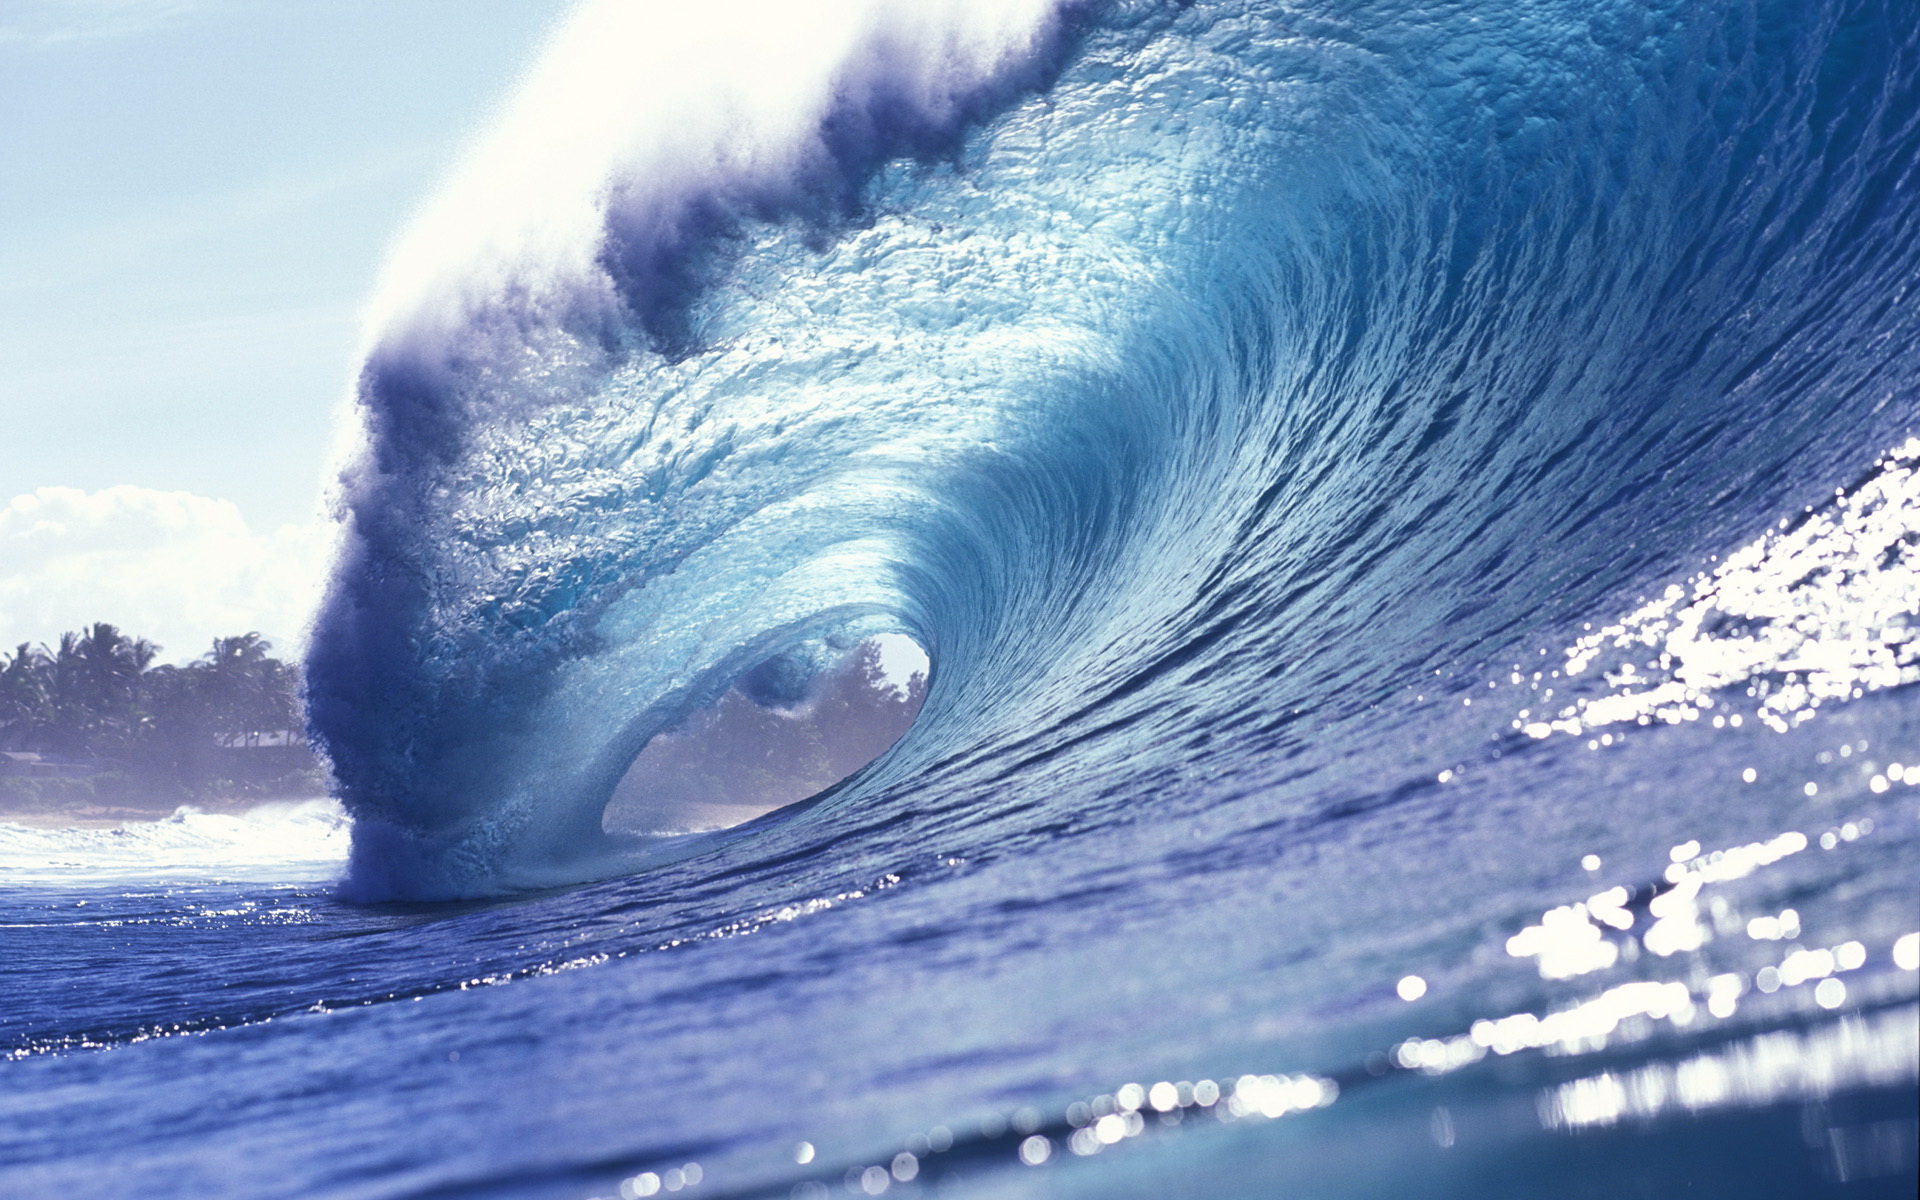 Hình nền sóng: Nếu bạn muốn khám phá sức mạnh và vẻ đẹp của biển cả, hình nền sóng chắc chắn sẽ làm bạn hài lòng. Hình ảnh sóng biển đập vào bờ cát sẽ đưa bạn đến với một thế giới đầy bão táp và điên cuồng. Hãy sẵn sàng cho một cuộc phiêu lưu đầy hồi hộp và đầy màu sắc trên điện thoại của bạn. 